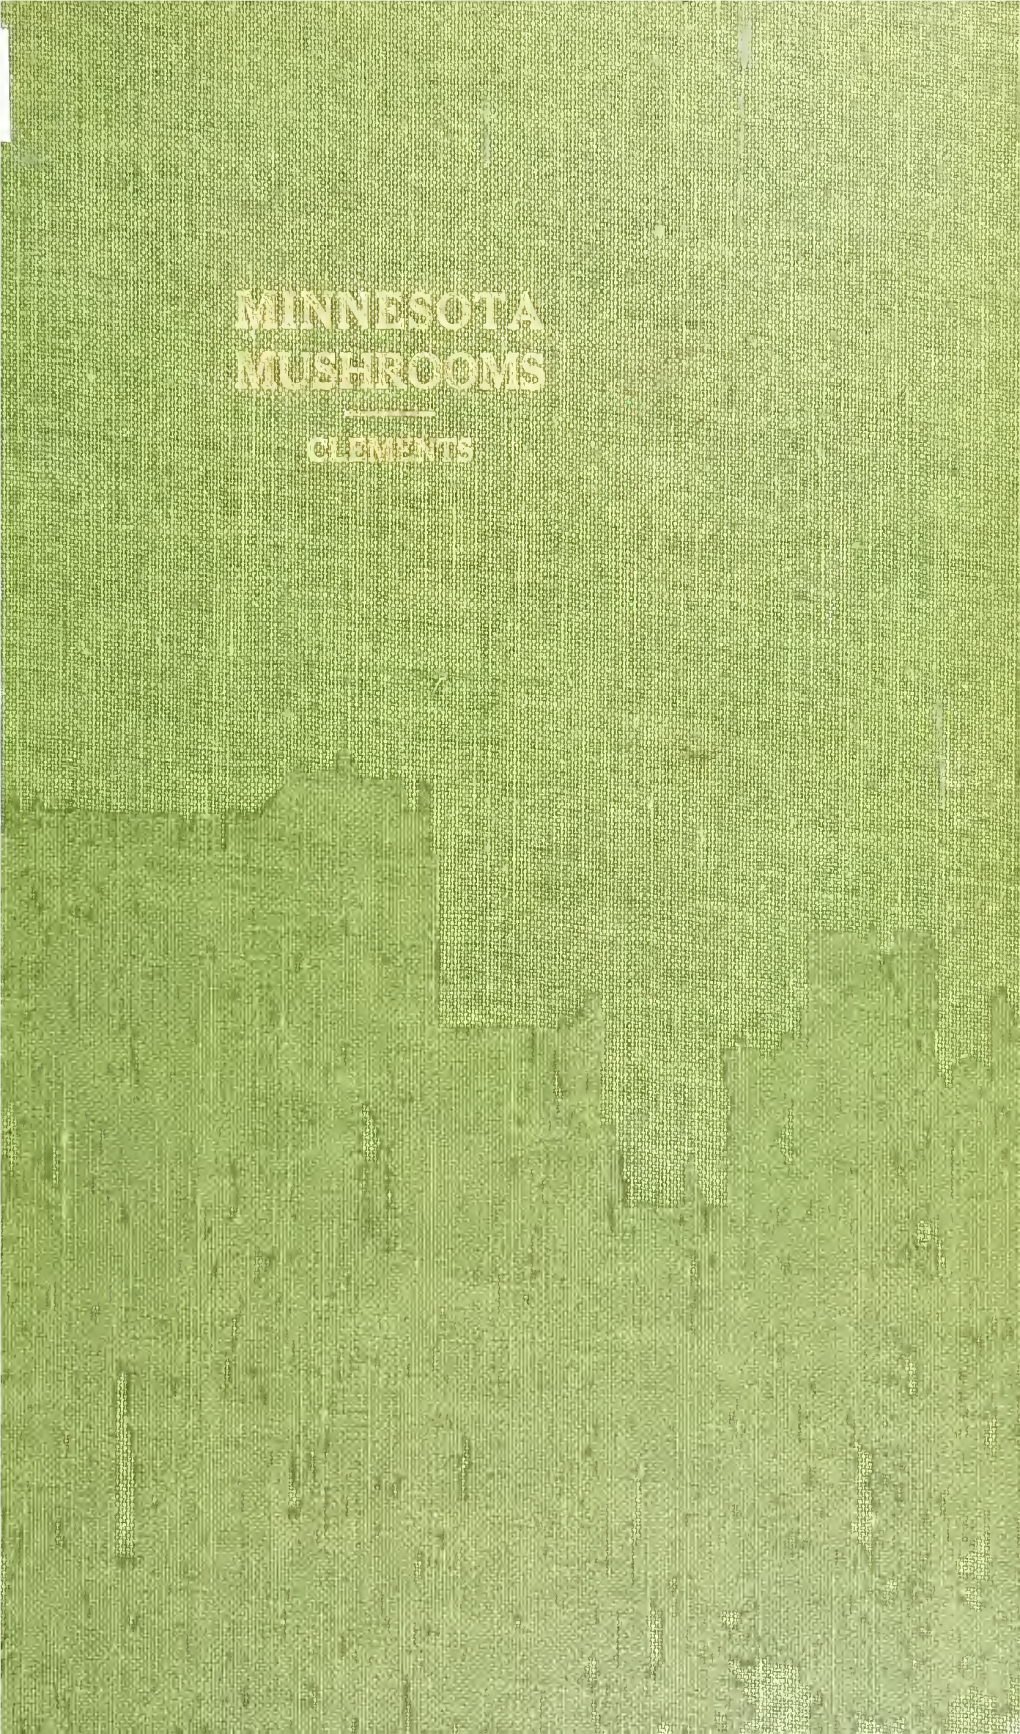 Minnesota Mushrooms